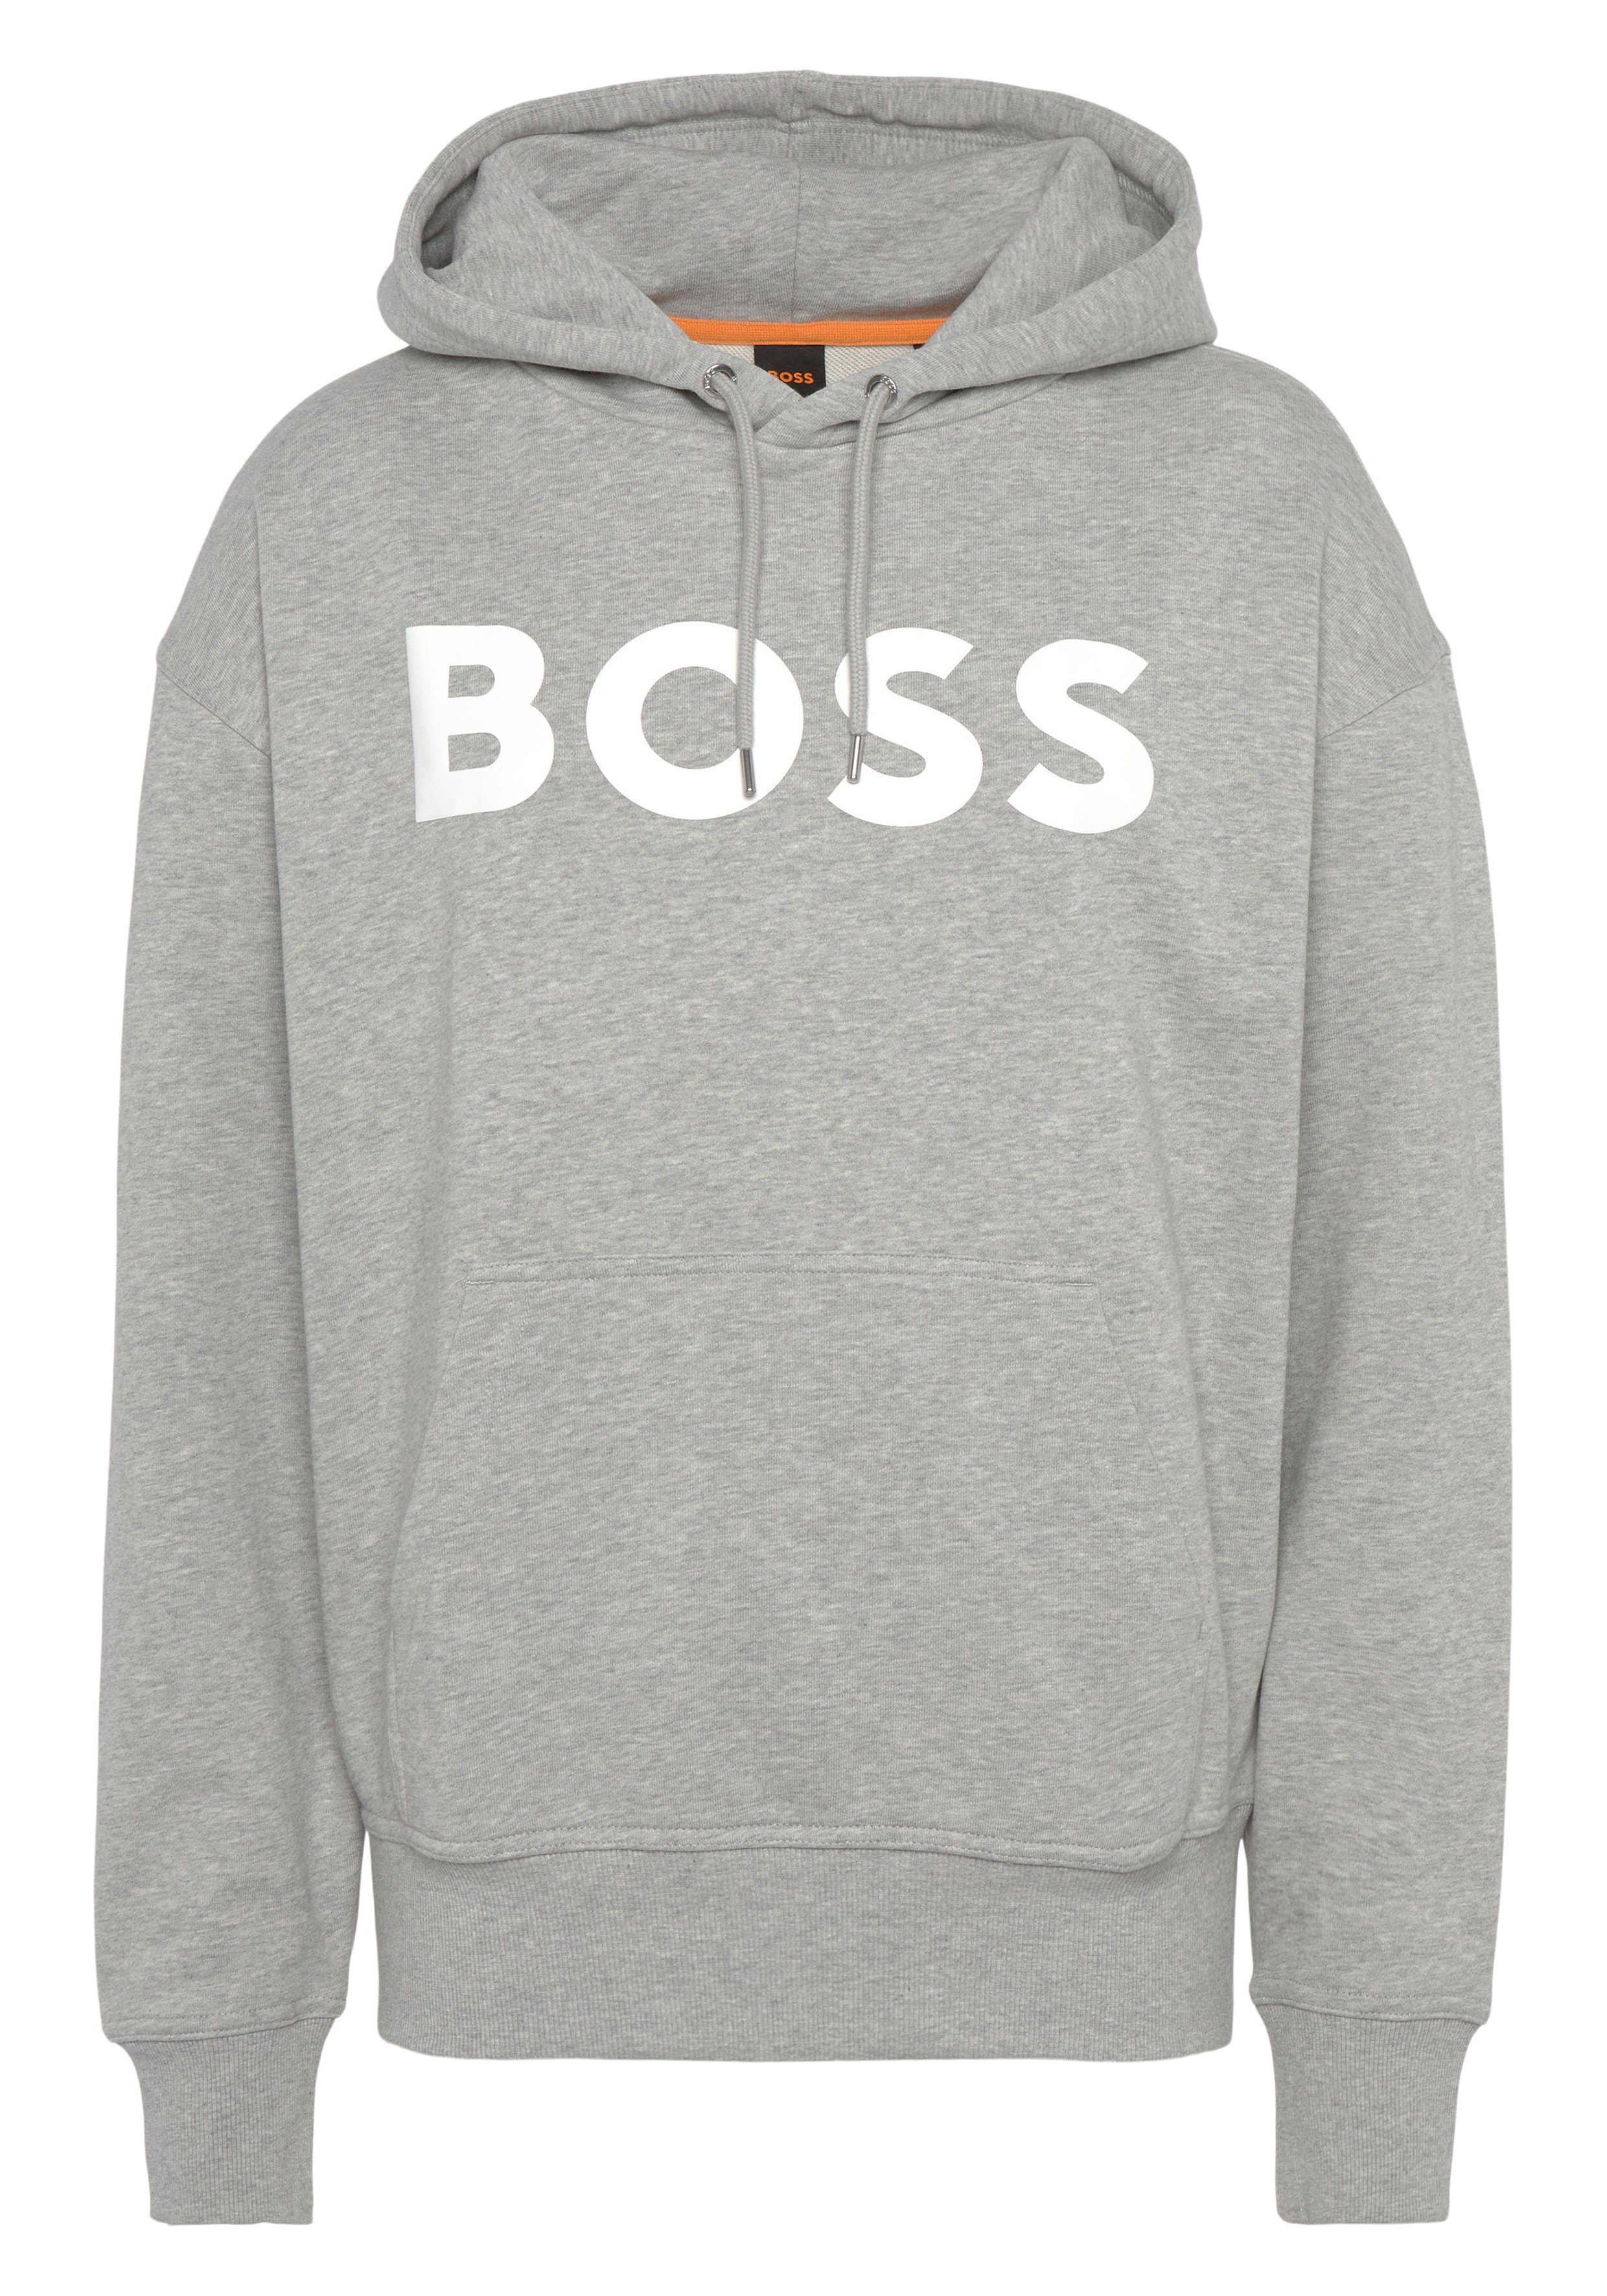 BOSS ORANGE Sweatshirt WebasicHood mit weißem Logodruck grau